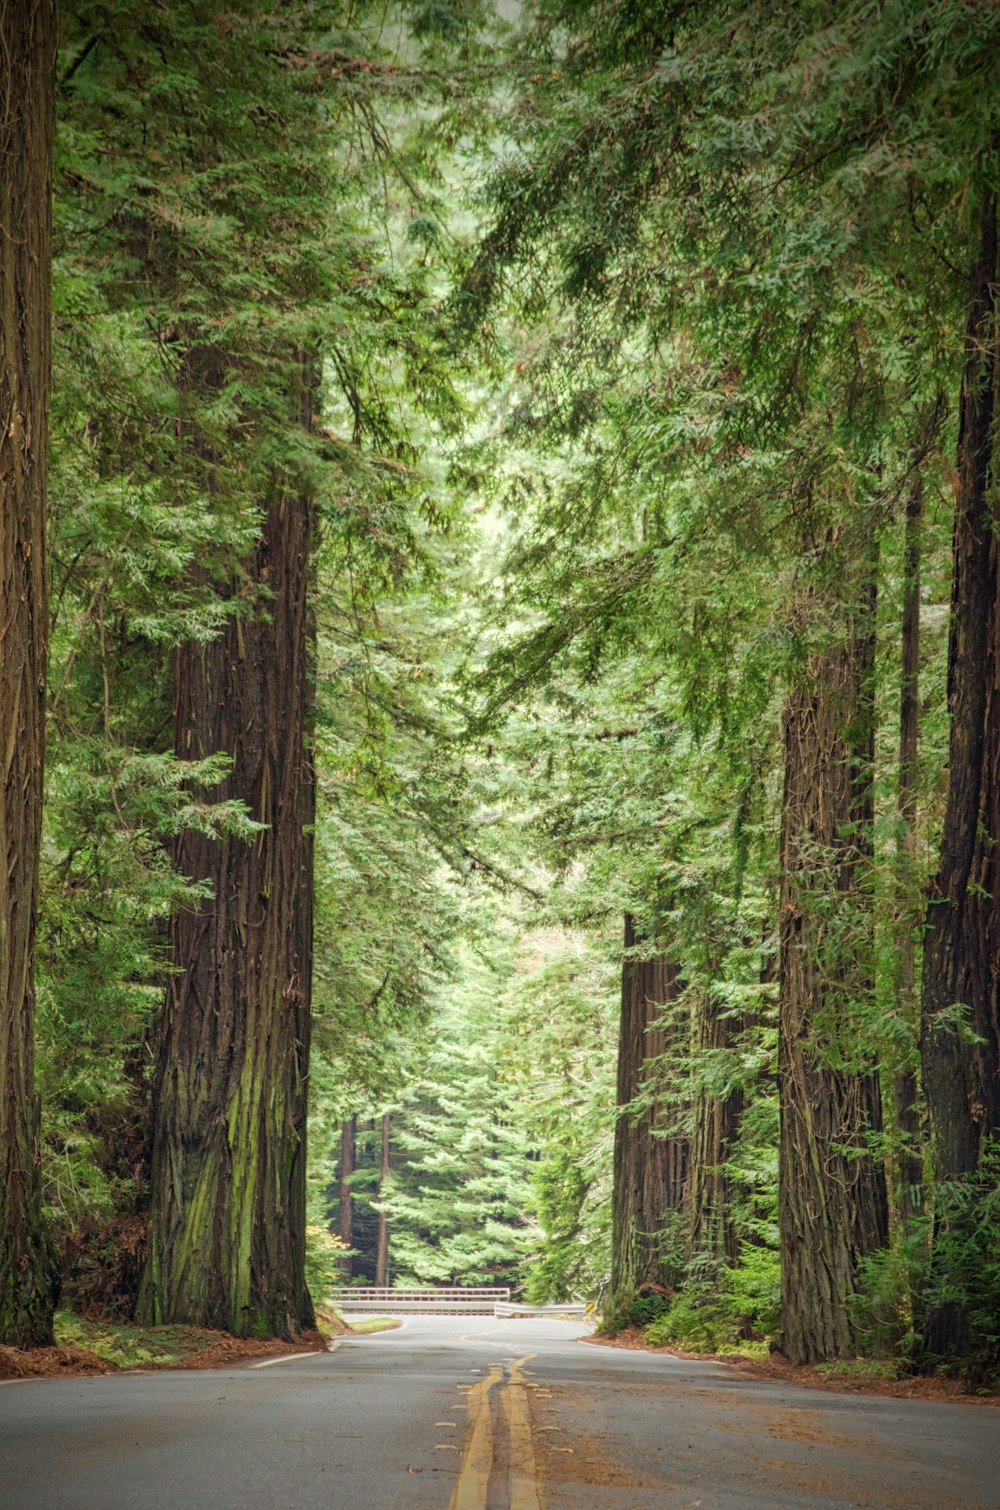 Una strada circondata da alberi ad alto fusto in una foresta